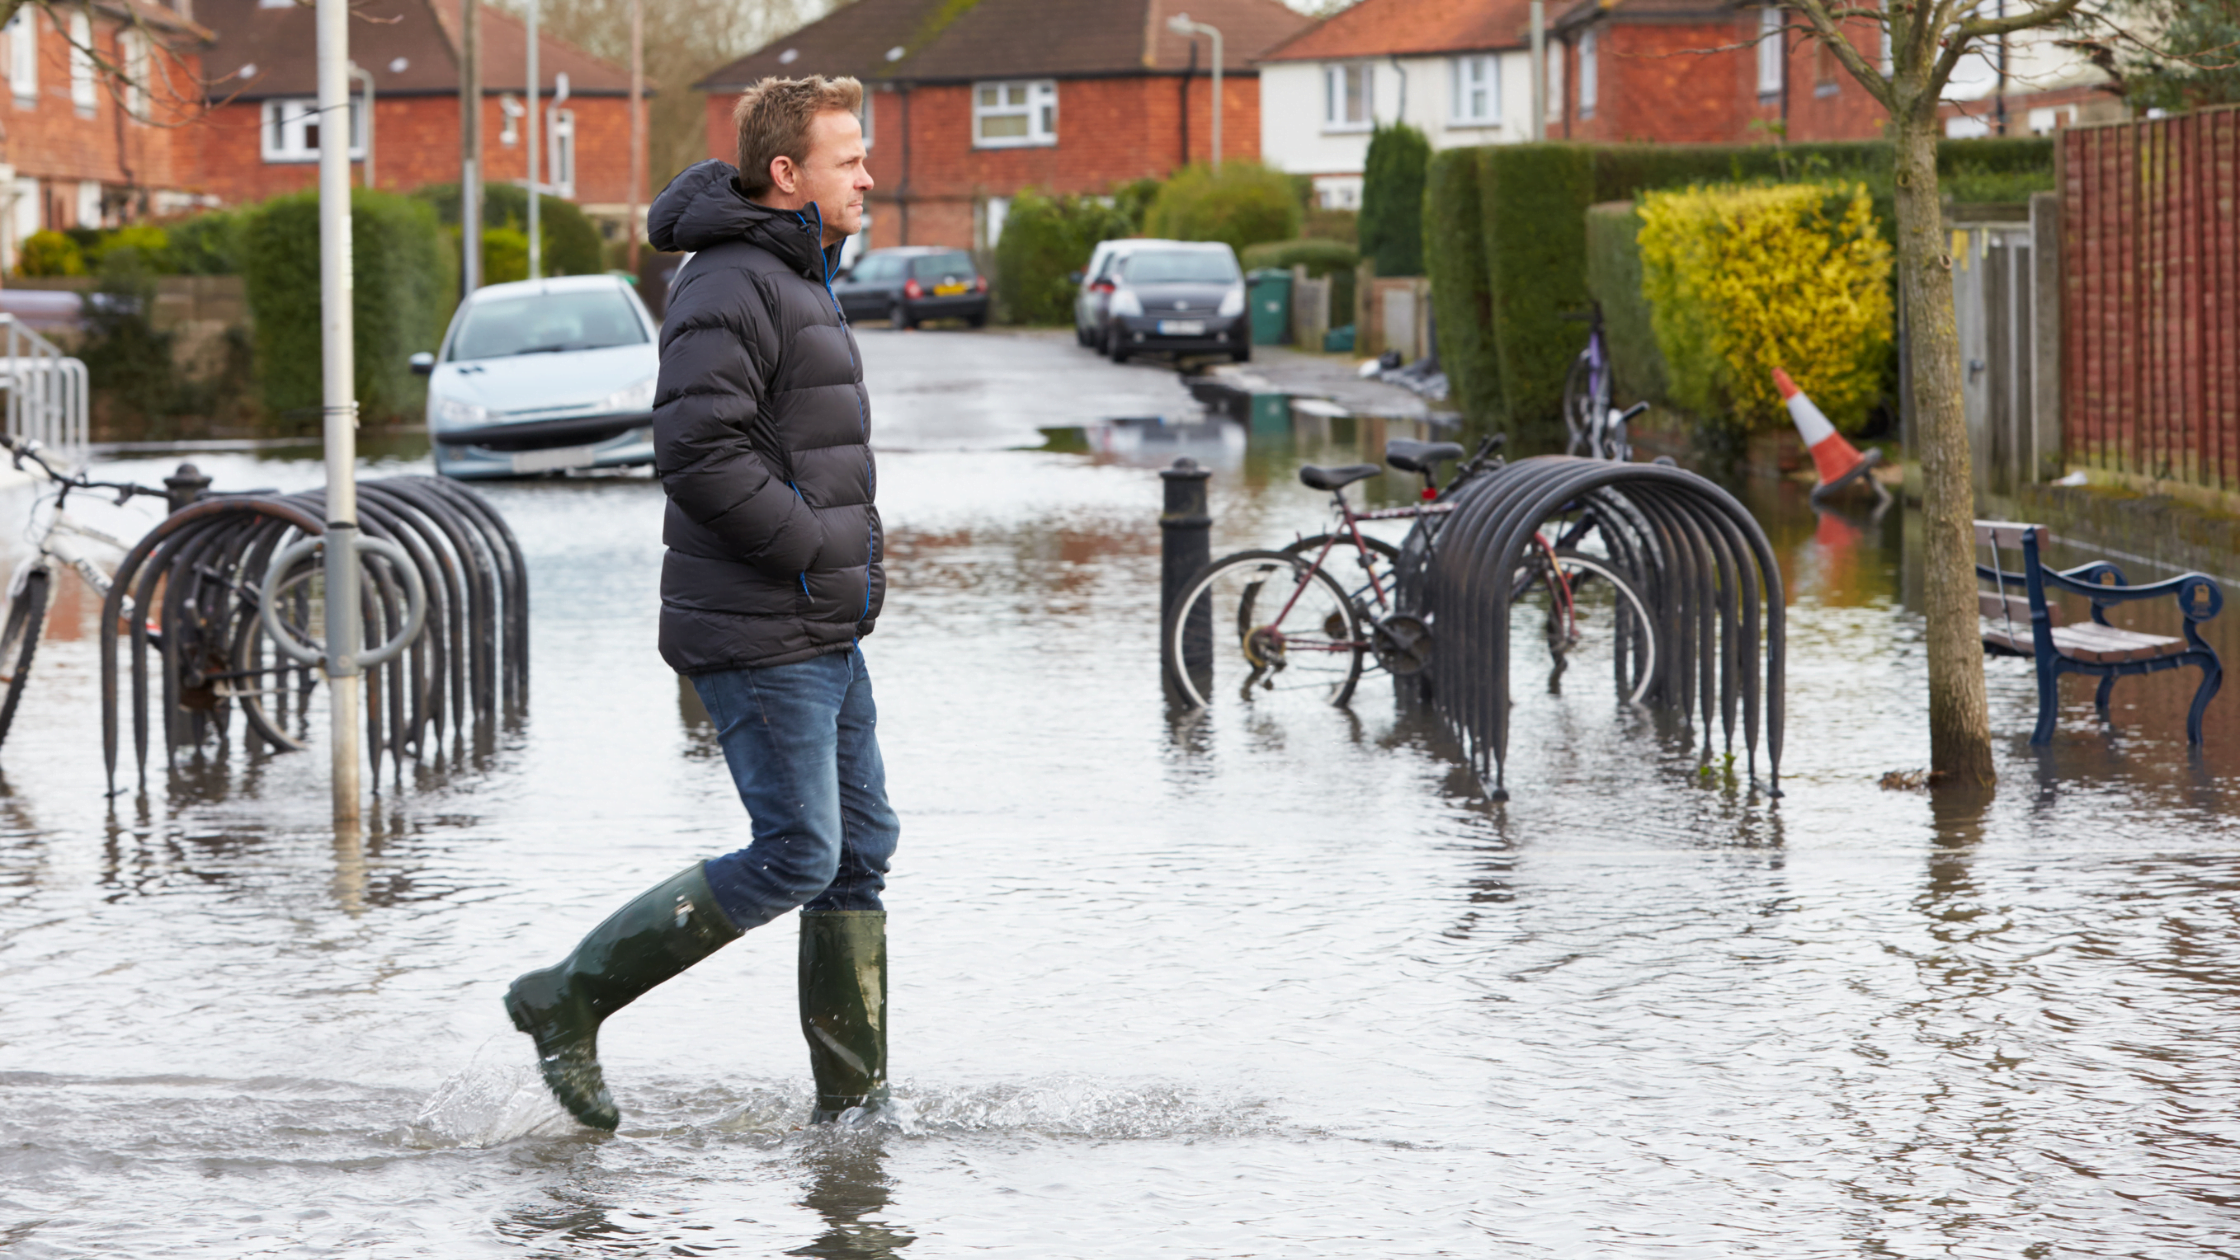 man in wellies walking along flooded urban street